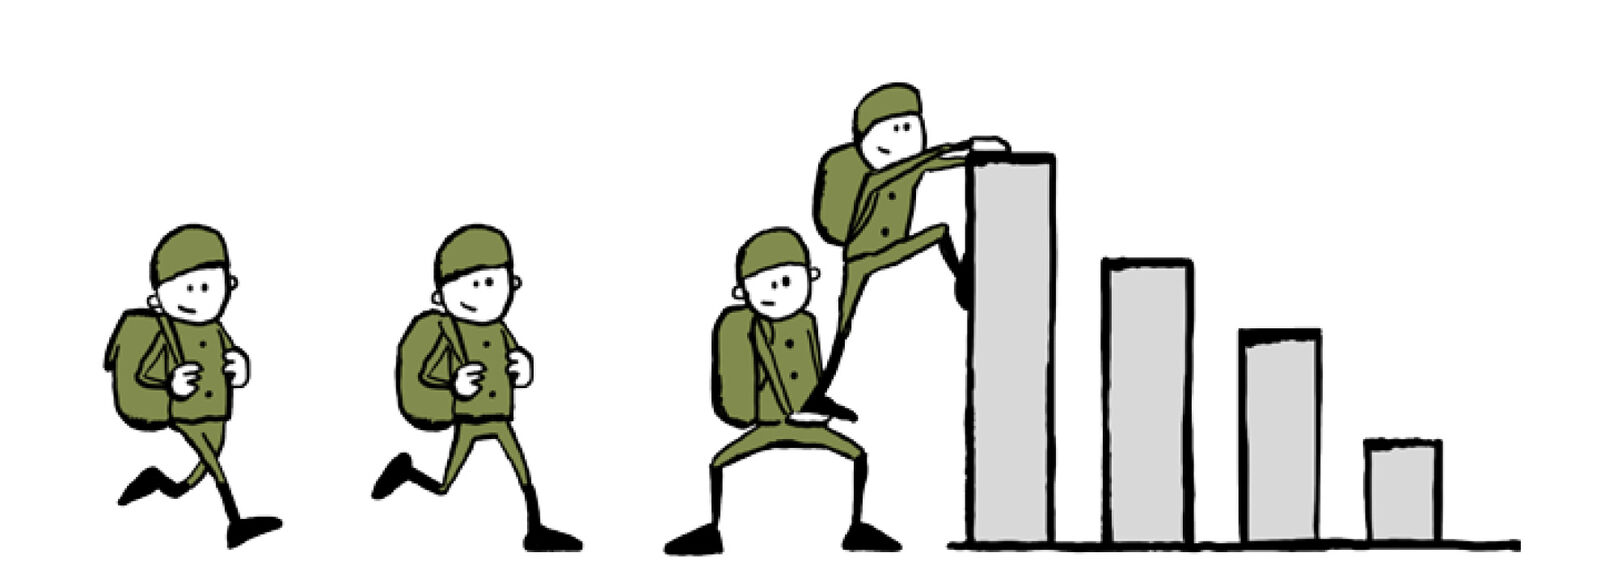 Illustration von Soldaten die ueber ein Diagramm klettern 